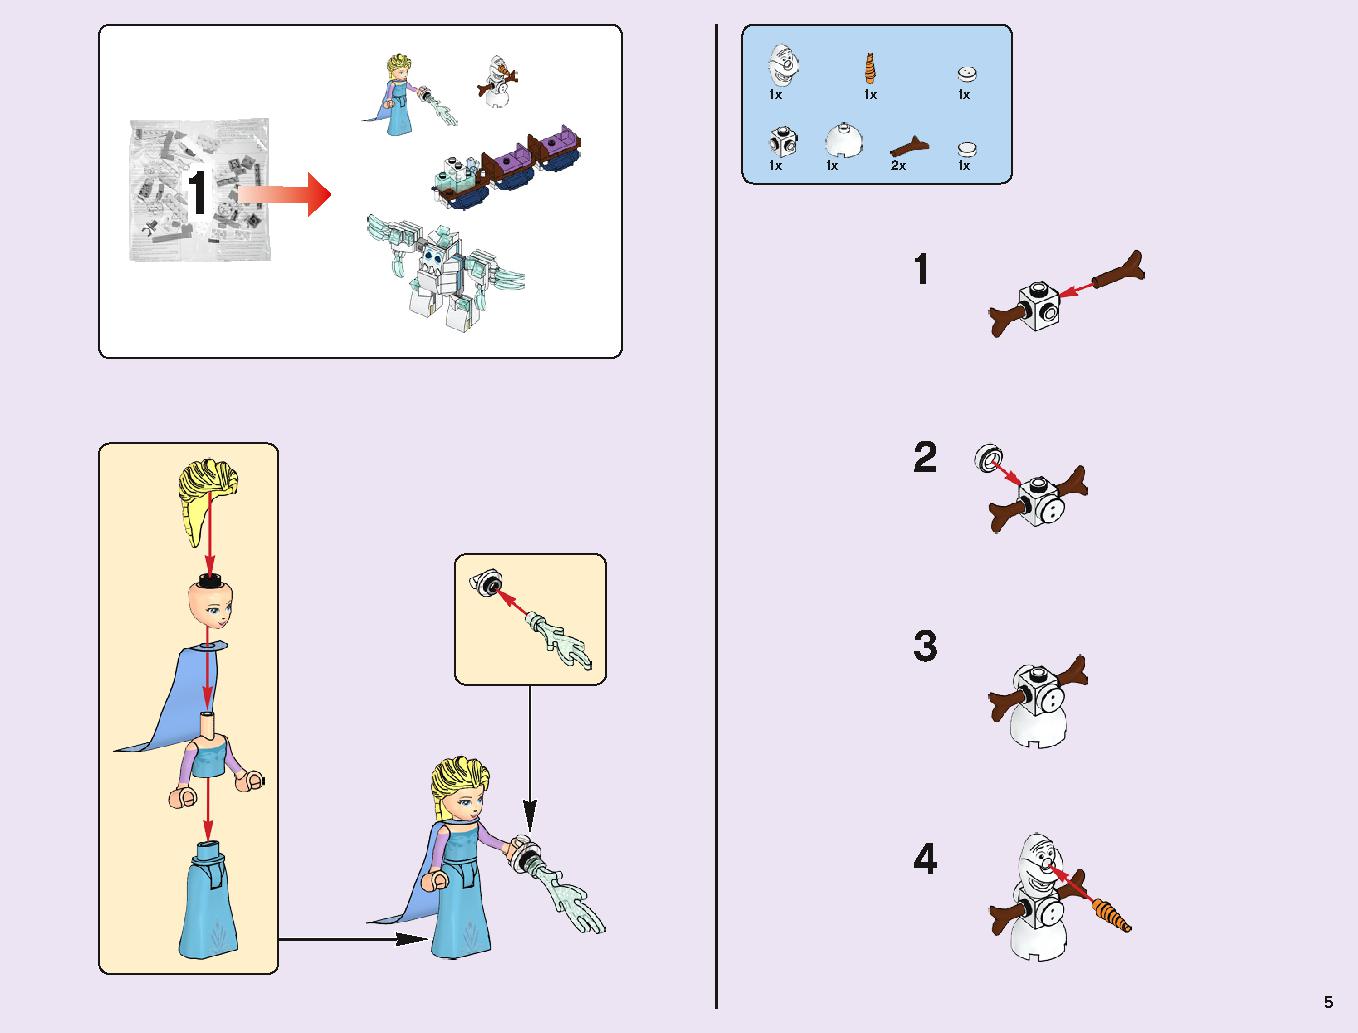 アナと雪の女王 “アイスキャッスル・ファンタジー” 43172 レゴの商品情報 レゴの説明書・組立方法 5 page